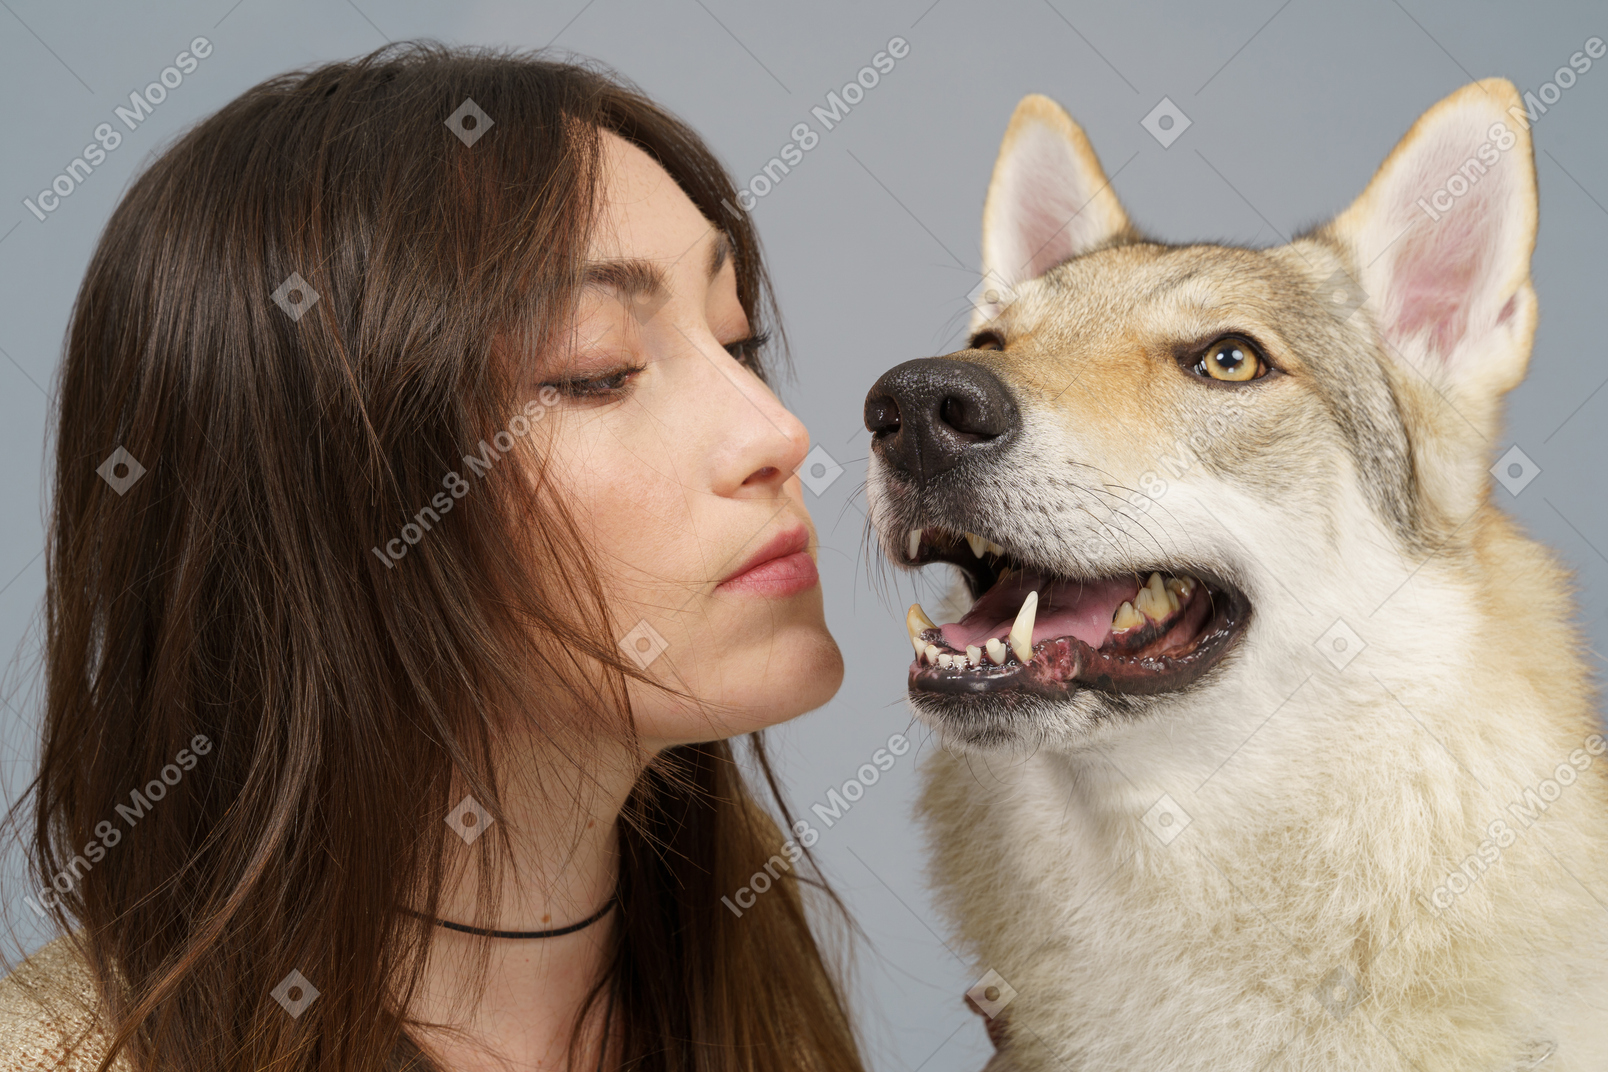 Nahaufnahme einer meisterin, die ihren hund küsst